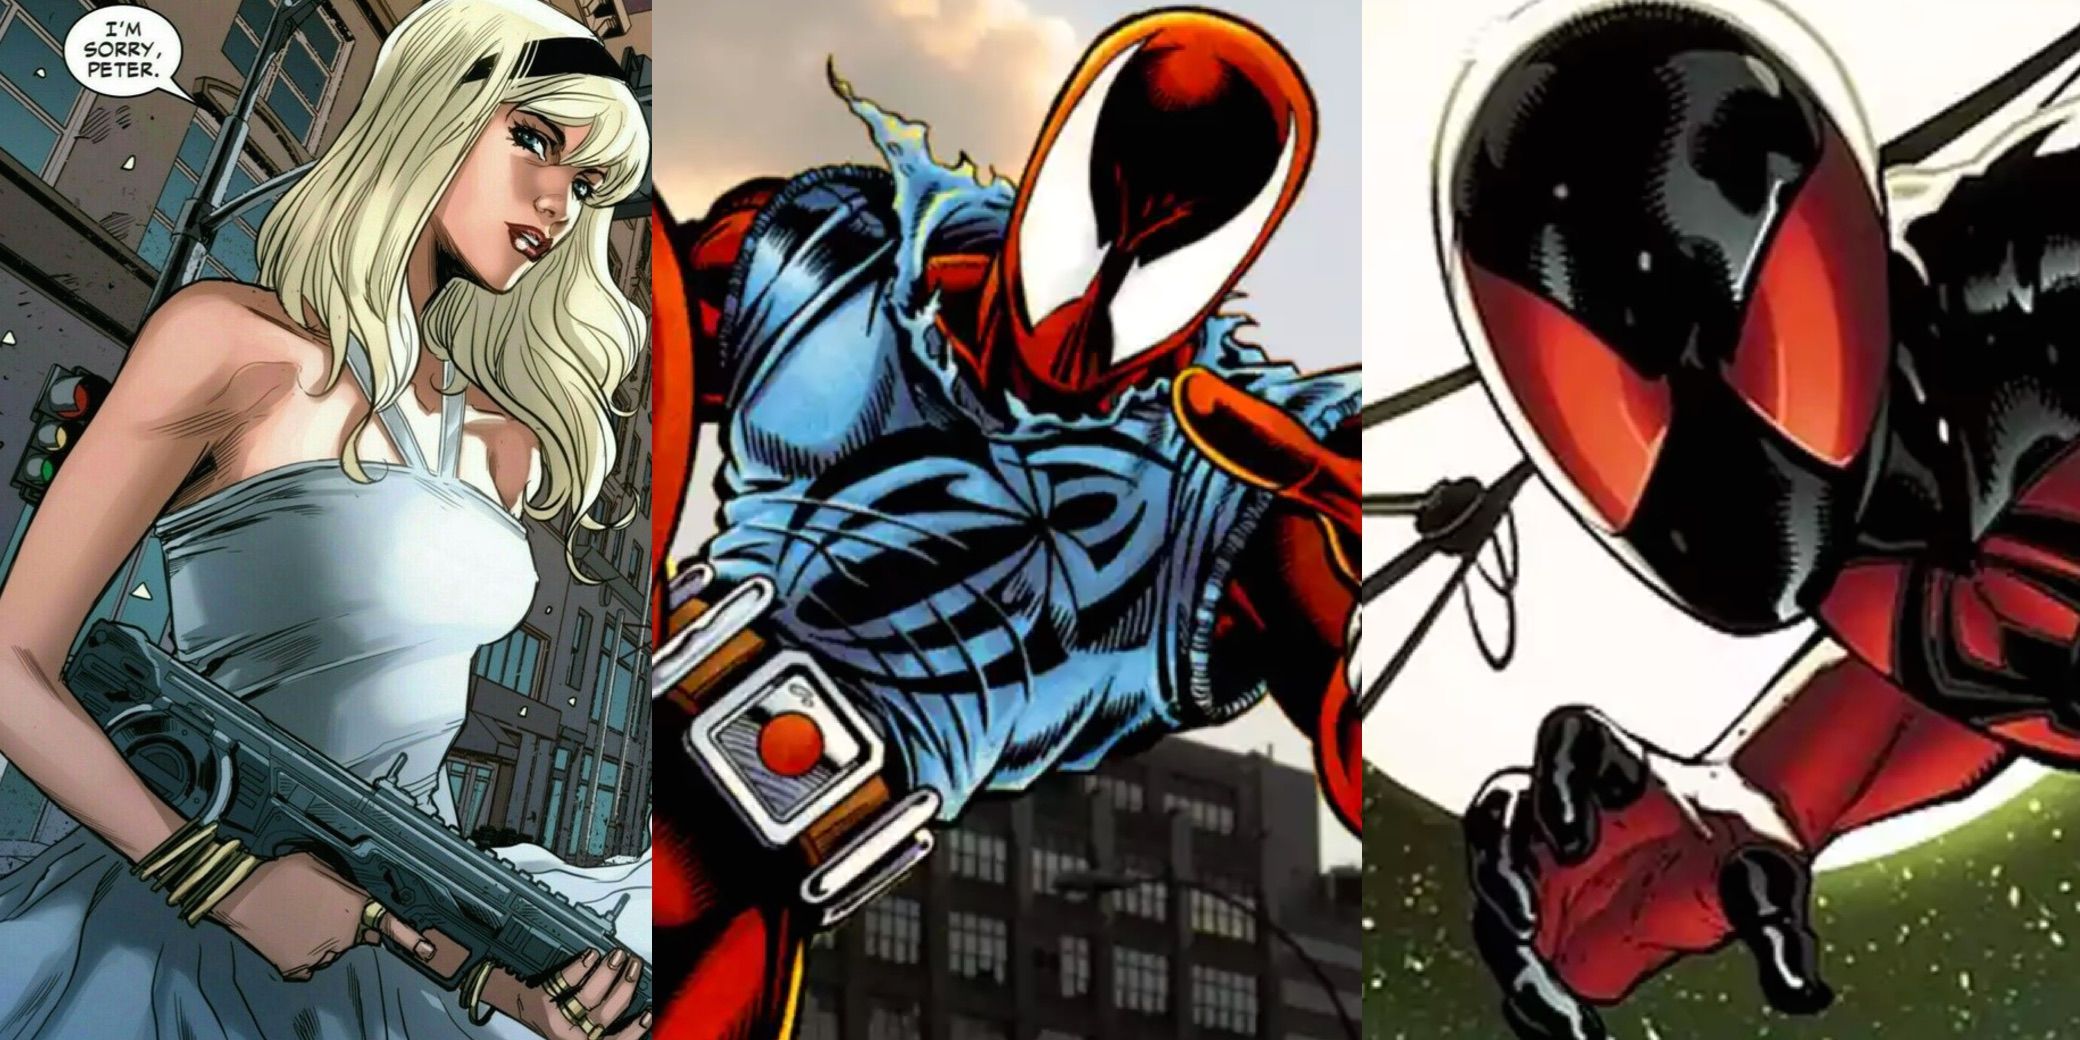 Spider-Man comic book clones